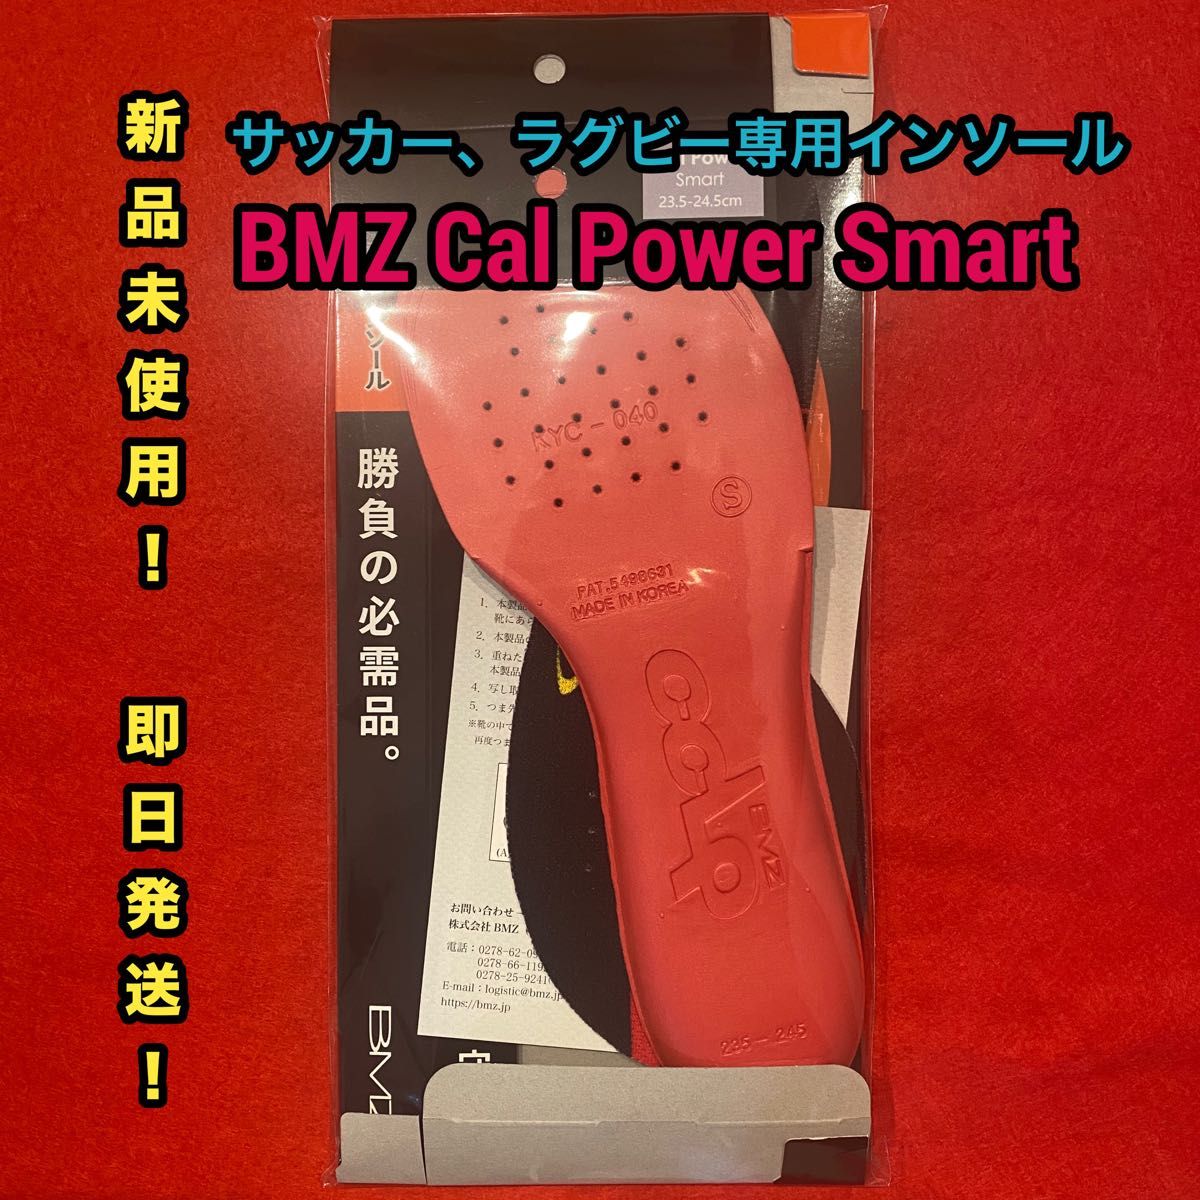 サッカー用インソール BMZ Cal Power Smart